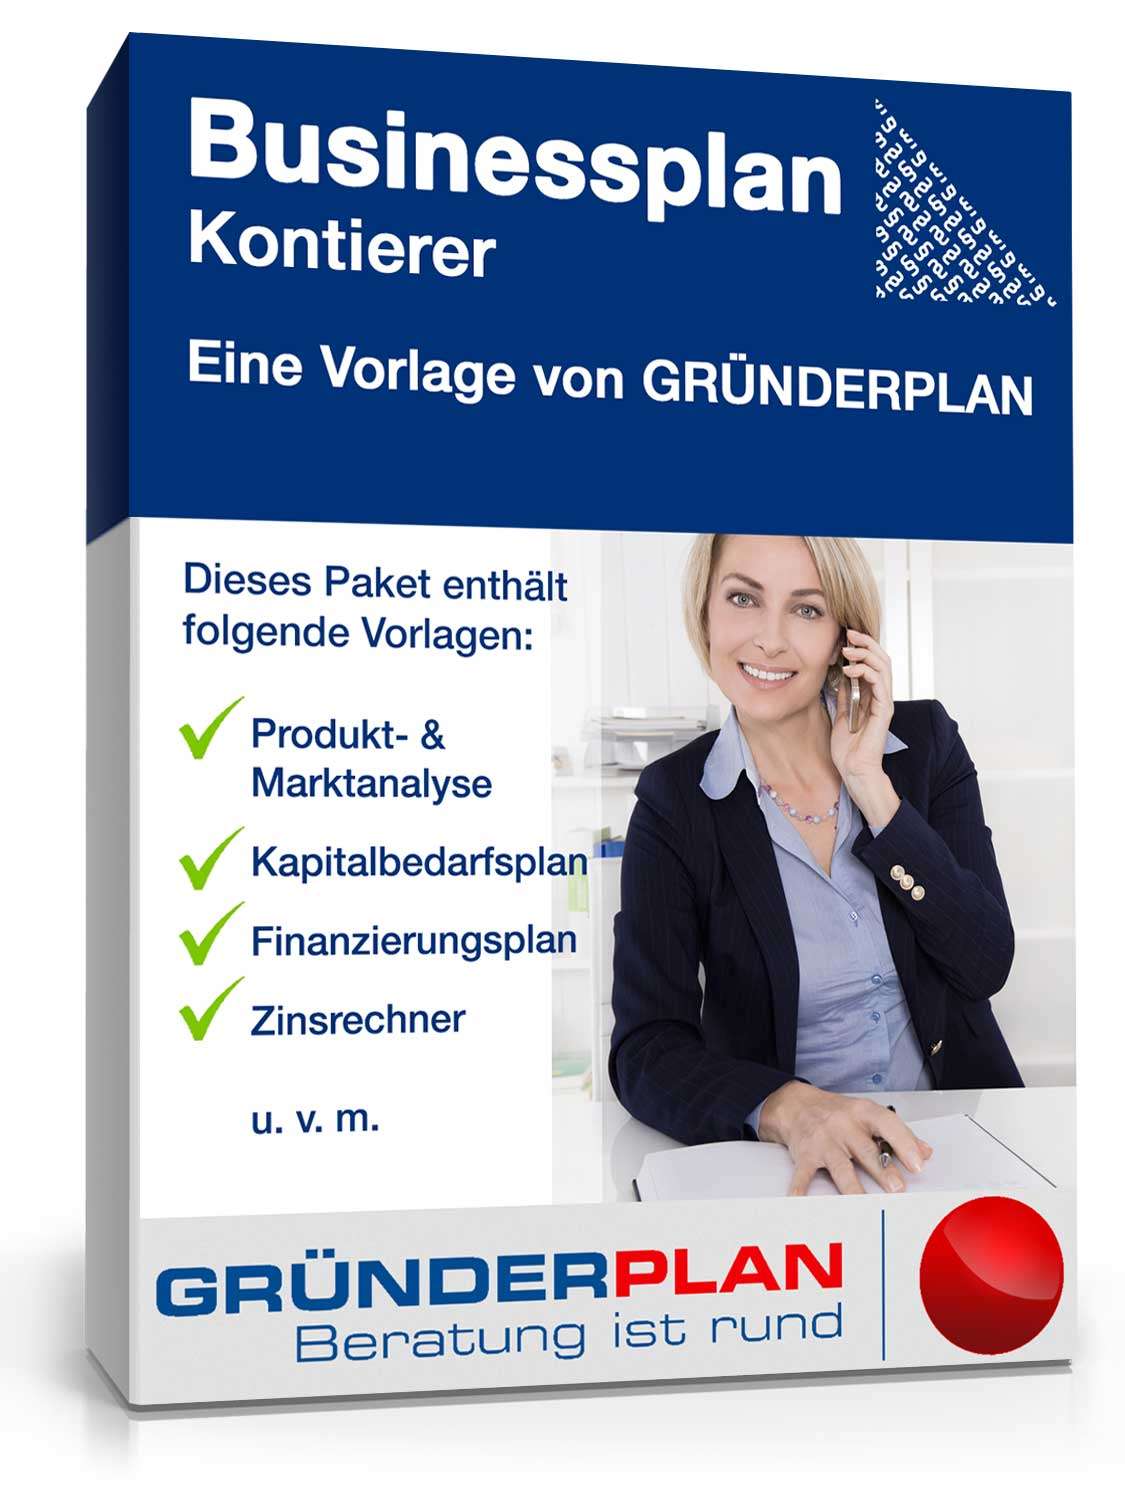 Hauptbild des Produkts: Businessplan Kontieren von Gründerplan